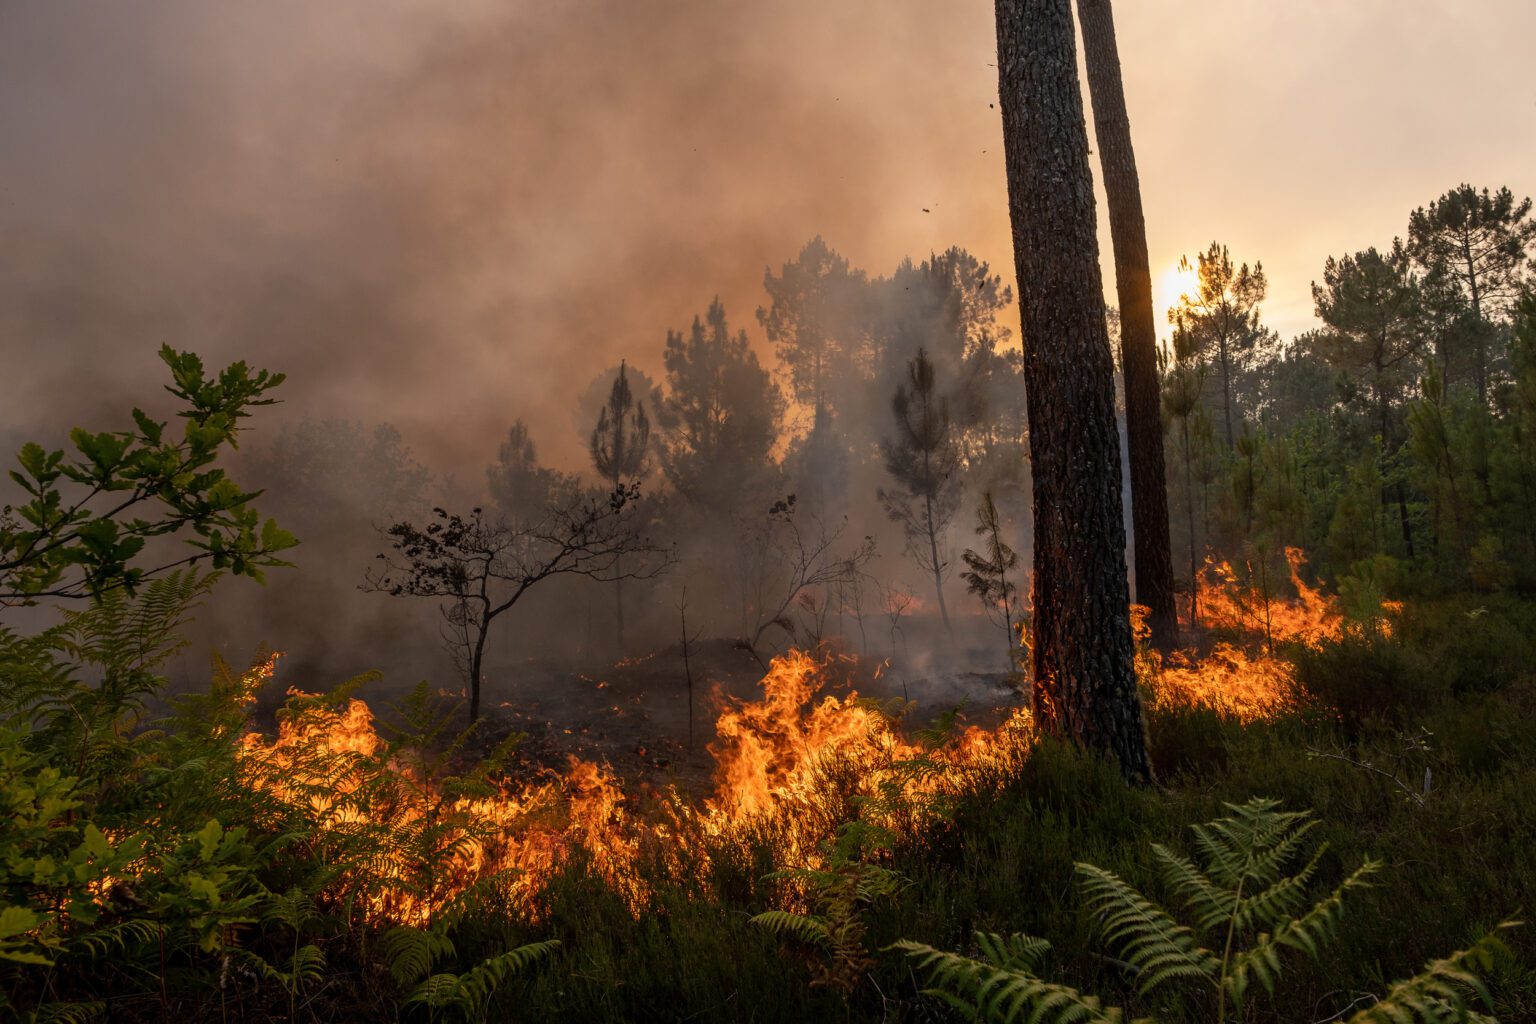 Emergencia Climática en Francia: las llamas arrasaron más de 20.000 hectáreas, con el oeste francés plagado de incendios. © Pierre Larrieu / Greenpeace